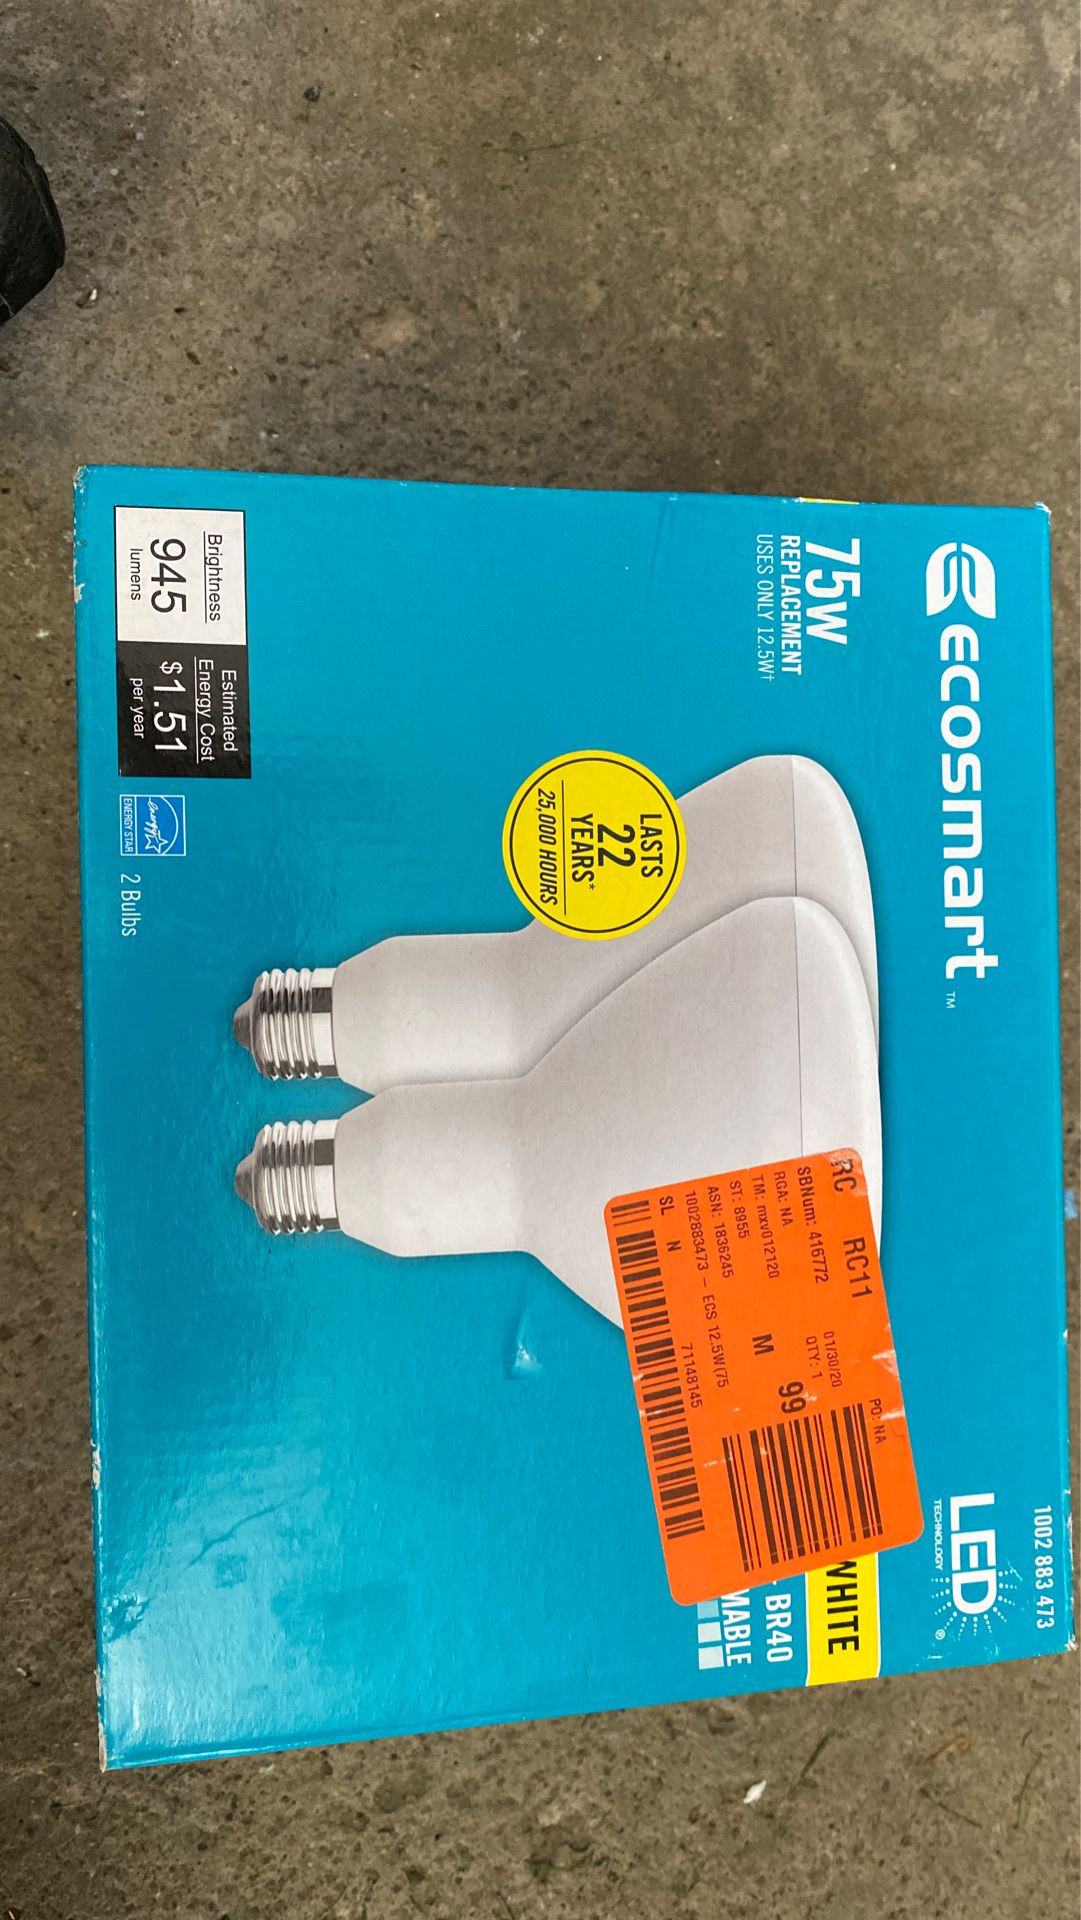 EcoSmart 75-Watt Equivalent BR30 Dimmable Energy Star LED Light Bulb Bright White (2-Pack)